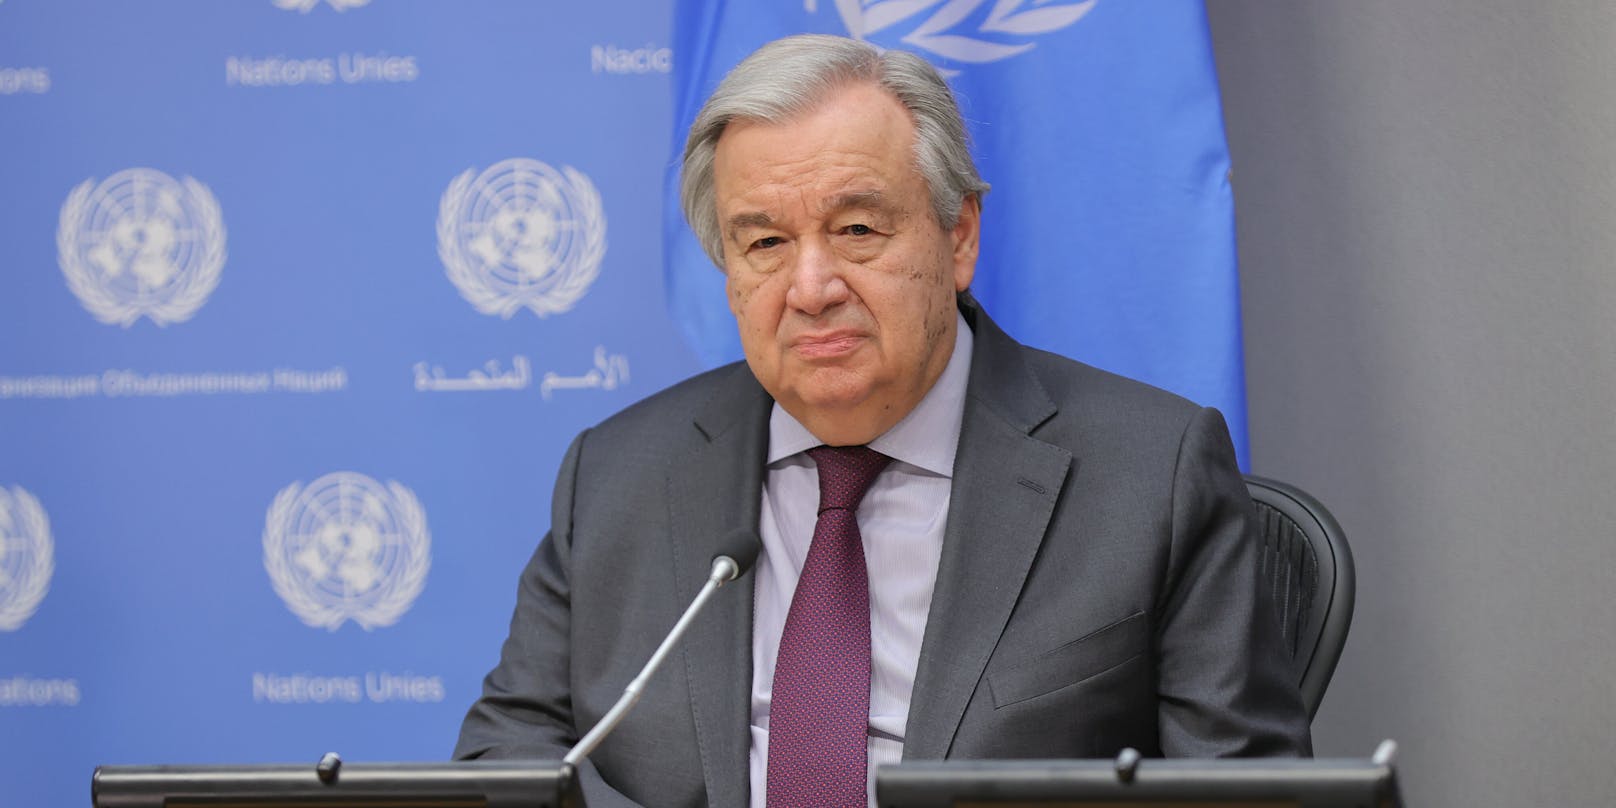 UN-Generalsekretär Antonio Guterres: "Rassismus ist ein Problem"